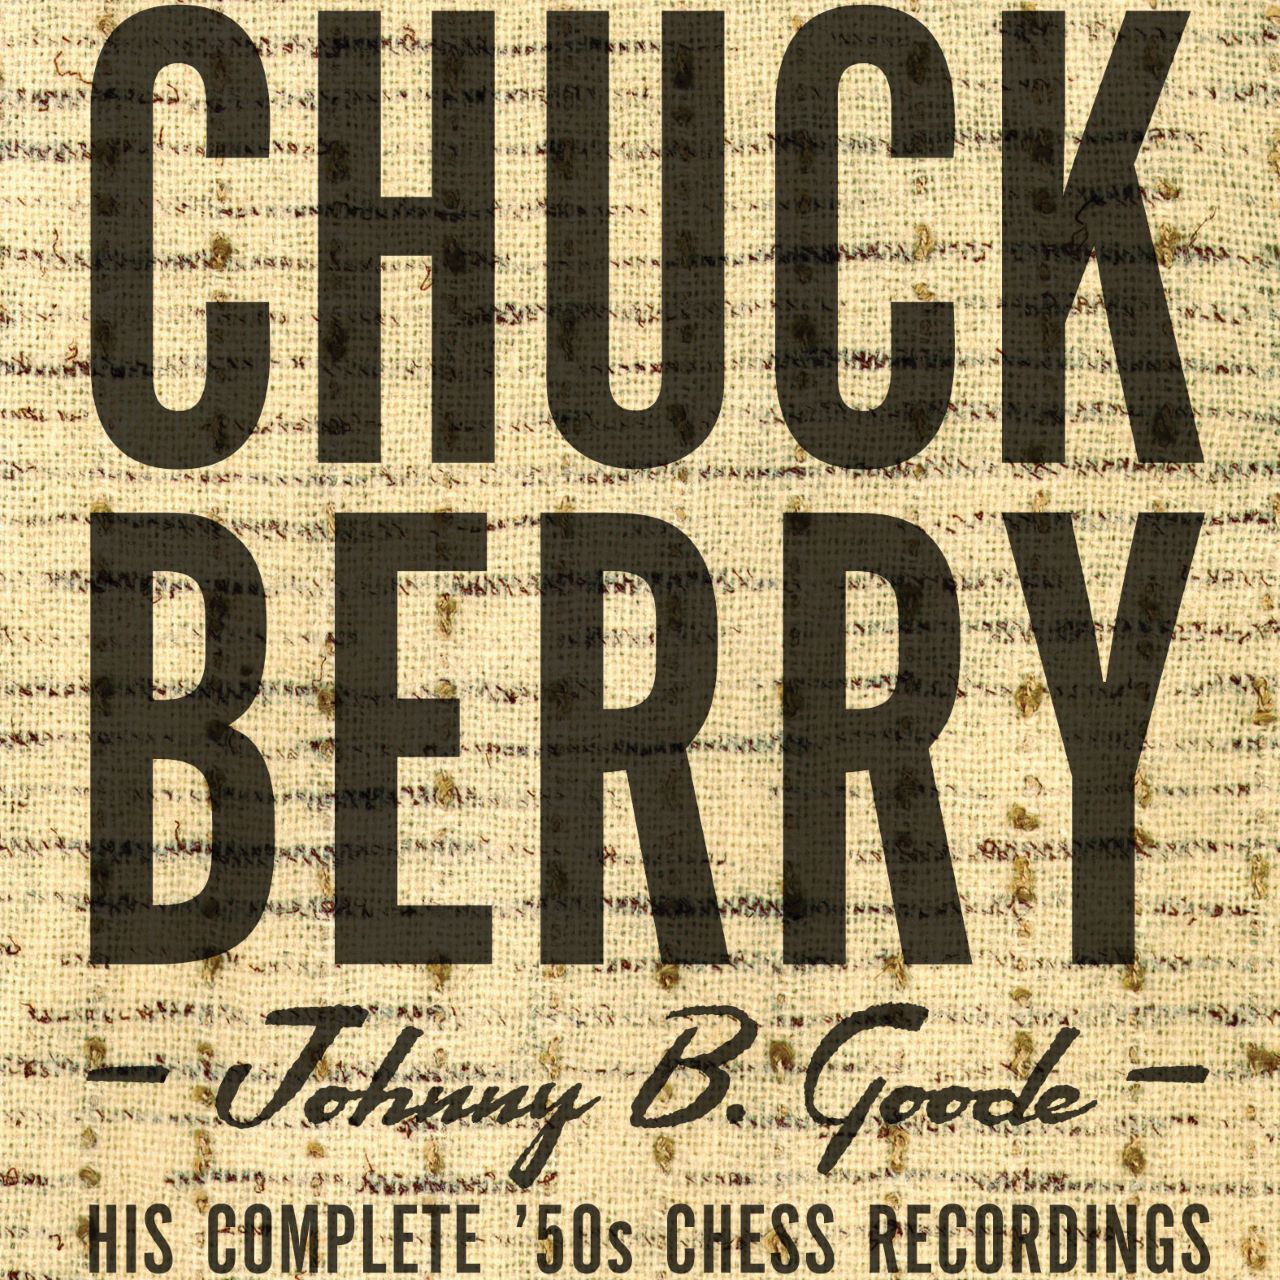 Chuck Berry - Johnny B. Goode cover album